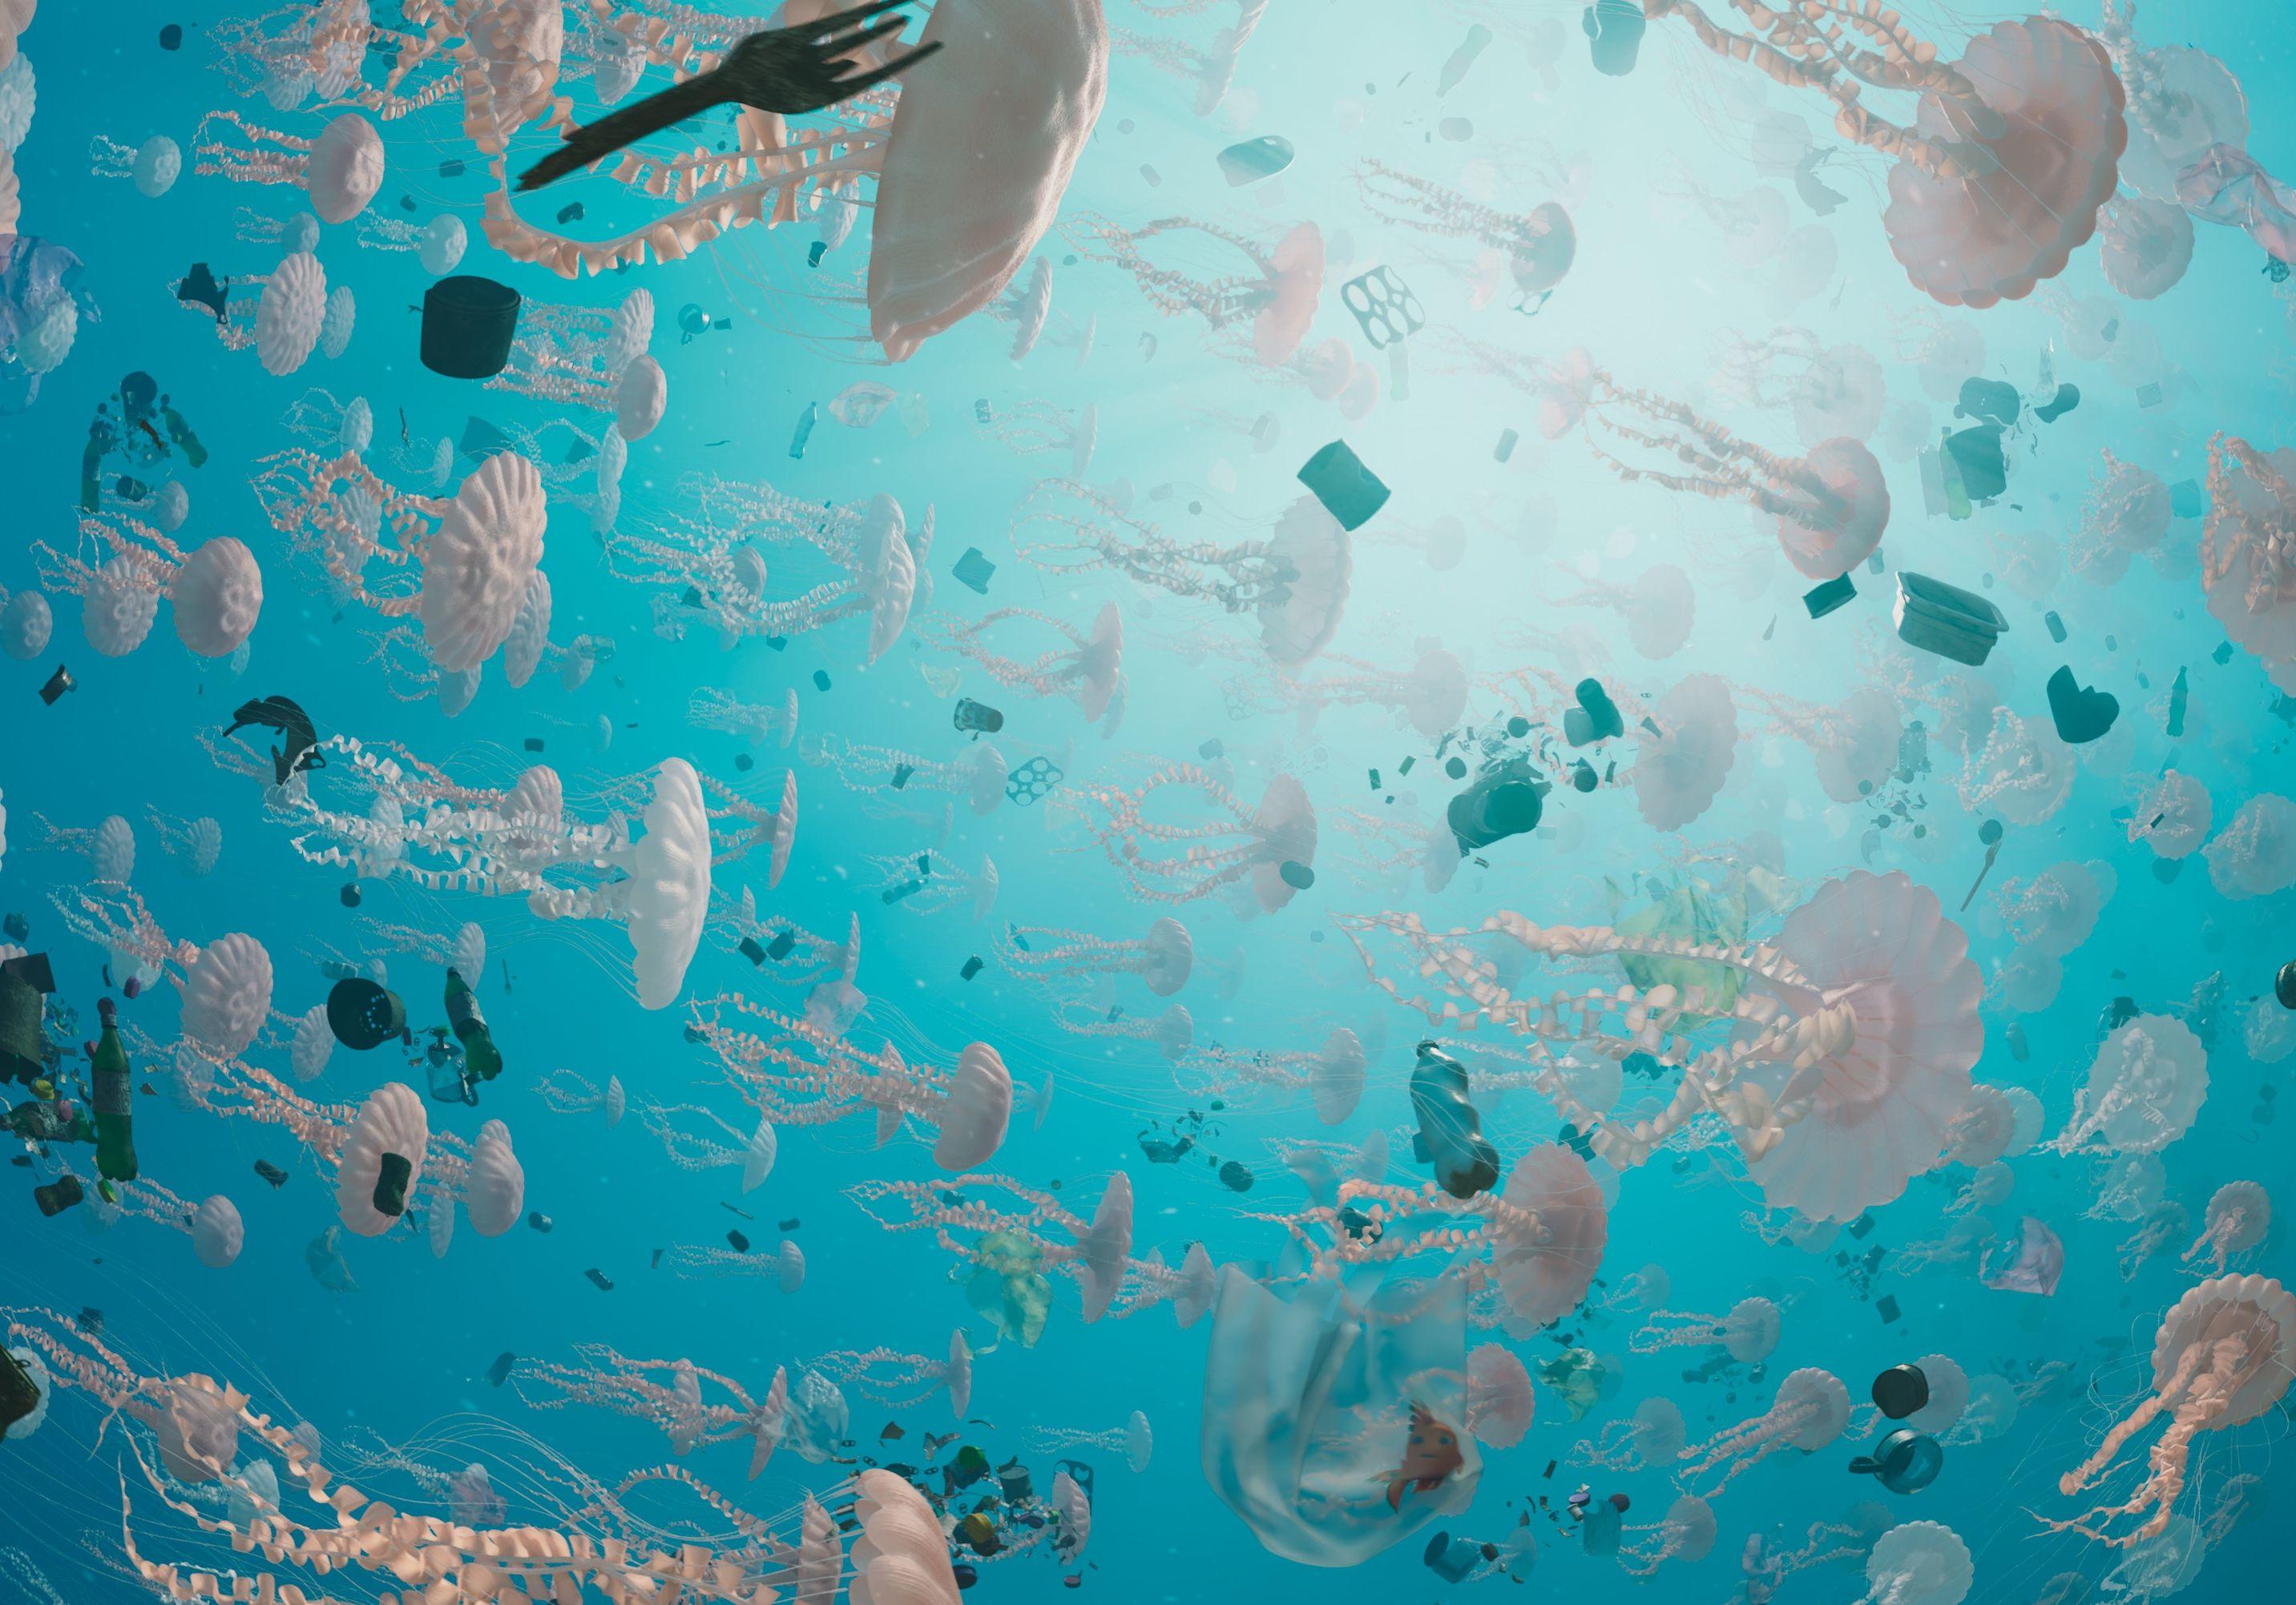 香港太空館天象廳十月一日（星期日）起放映全新立體球幕電影《珊瑚礁冒險隊3D》，帶領觀眾探索海底世界。圖示一個滿佈垃圾和污染的海域，破壞海洋生態。（圖片來源：SOFTMACHINE）